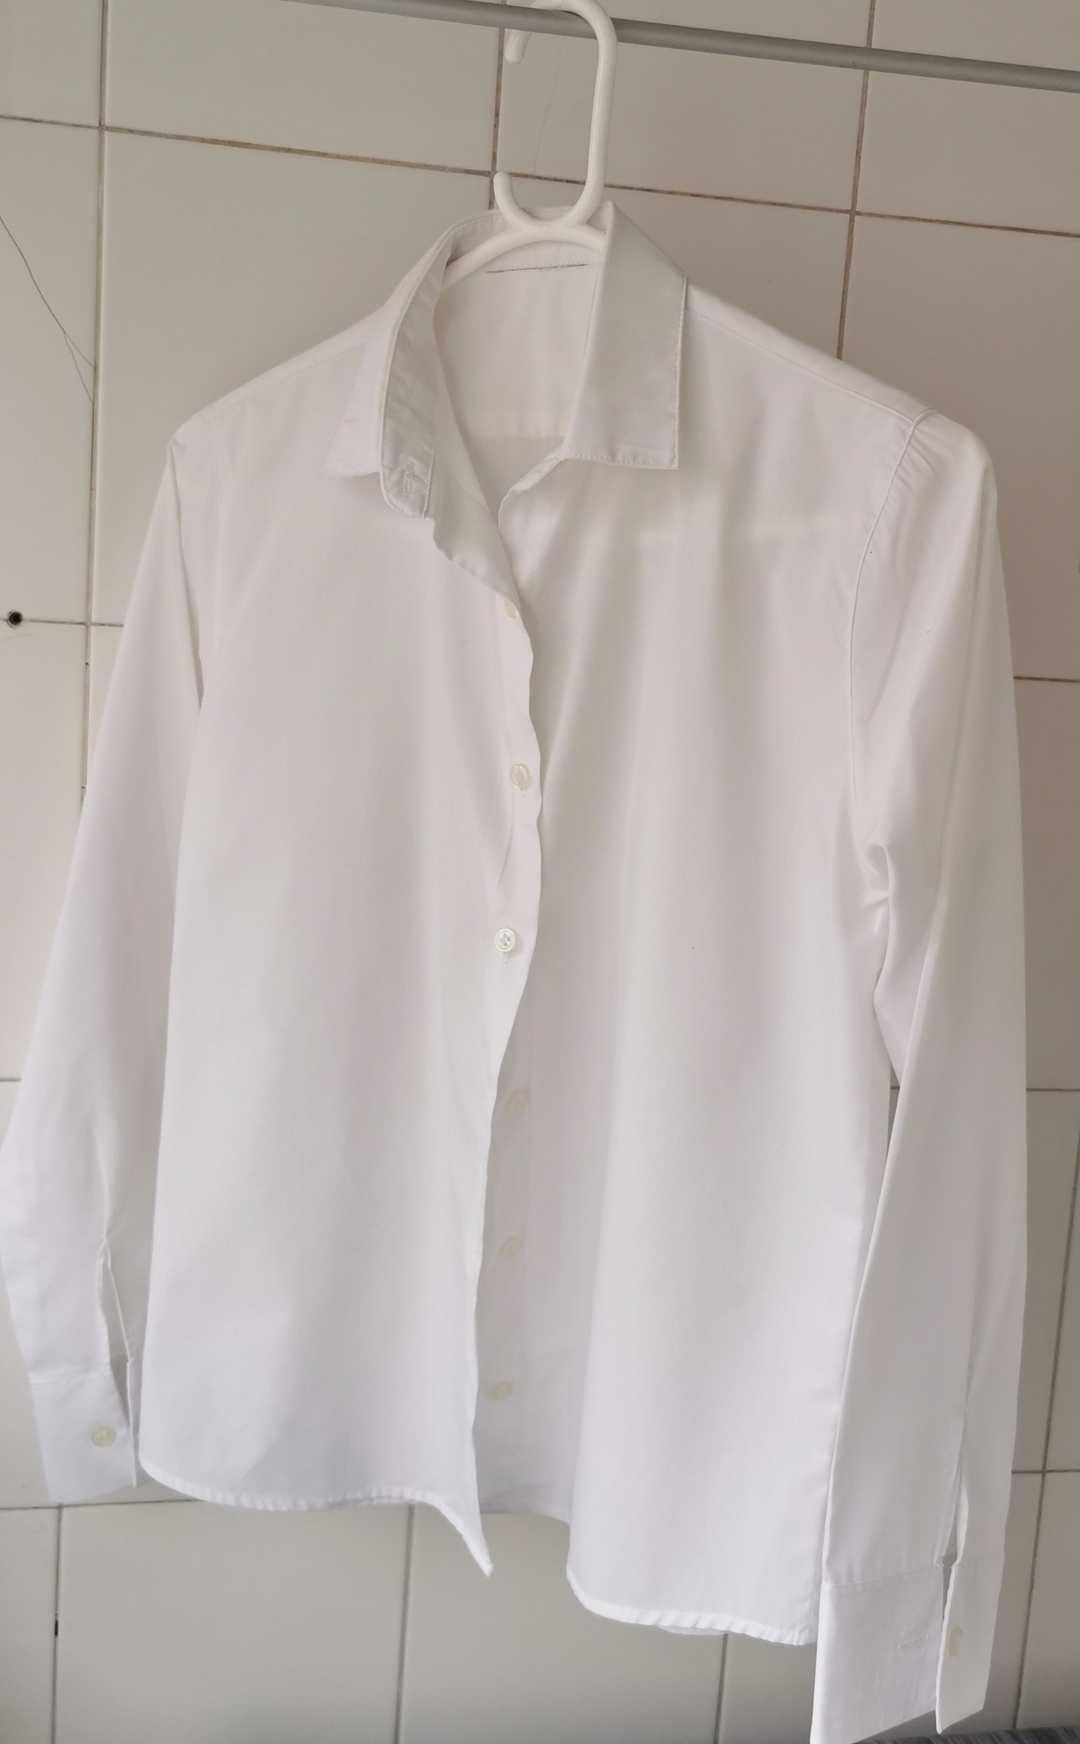 Duas Blusas/camisetes brancas, de tecido fino e fresco